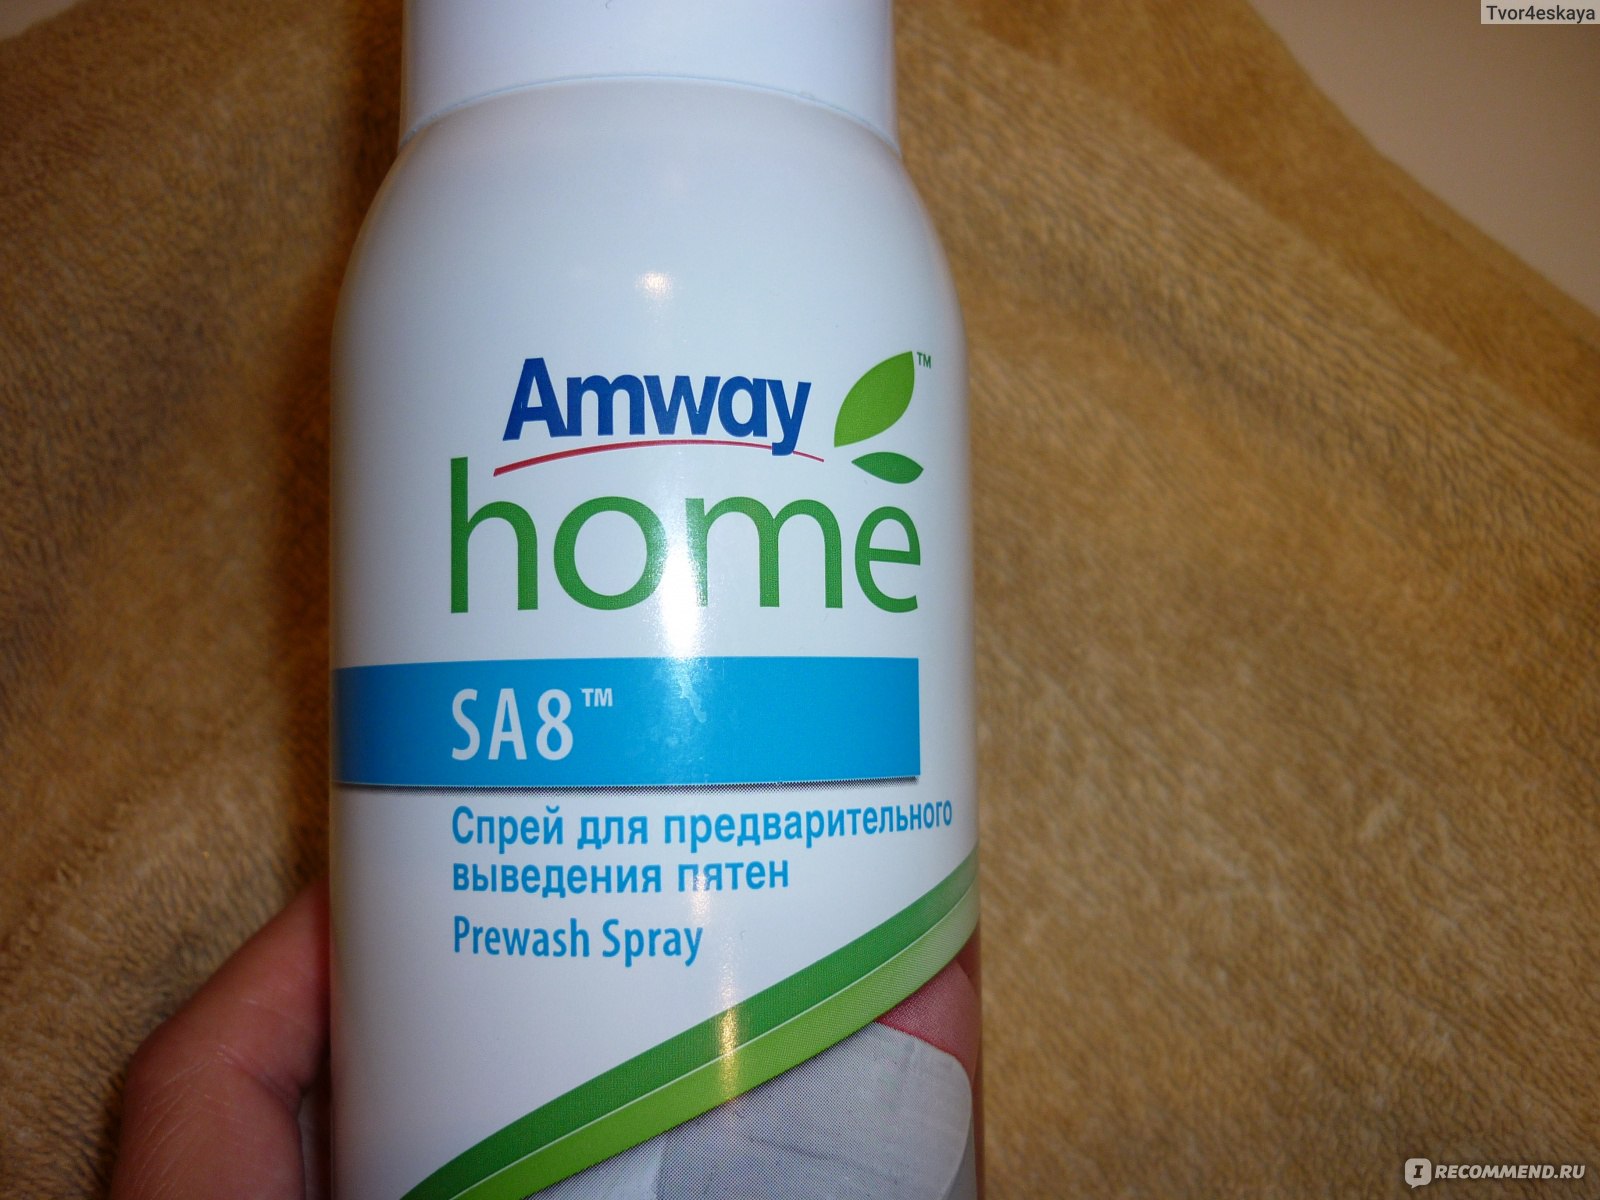 Пятновыводитель Amway SA8 Спрей для предварительного выведения пятен Prewash Spray отзывы